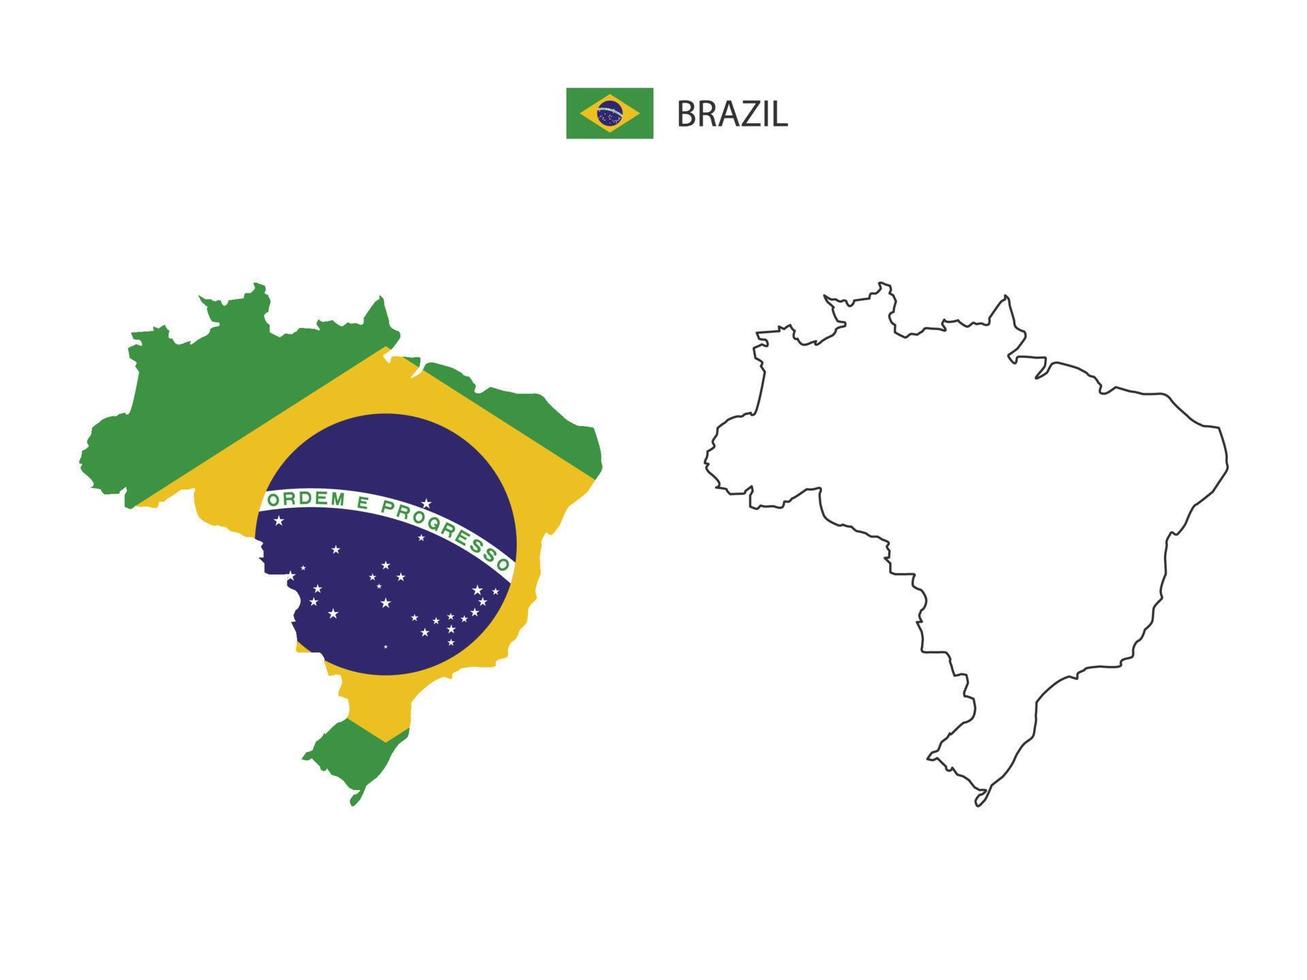 Brazilië kaart stad vector verdeeld door schets eenvoud stijl. hebben 2 versies, zwart dun lijn versie en kleur van land vlag versie. beide kaart waren Aan de wit achtergrond.